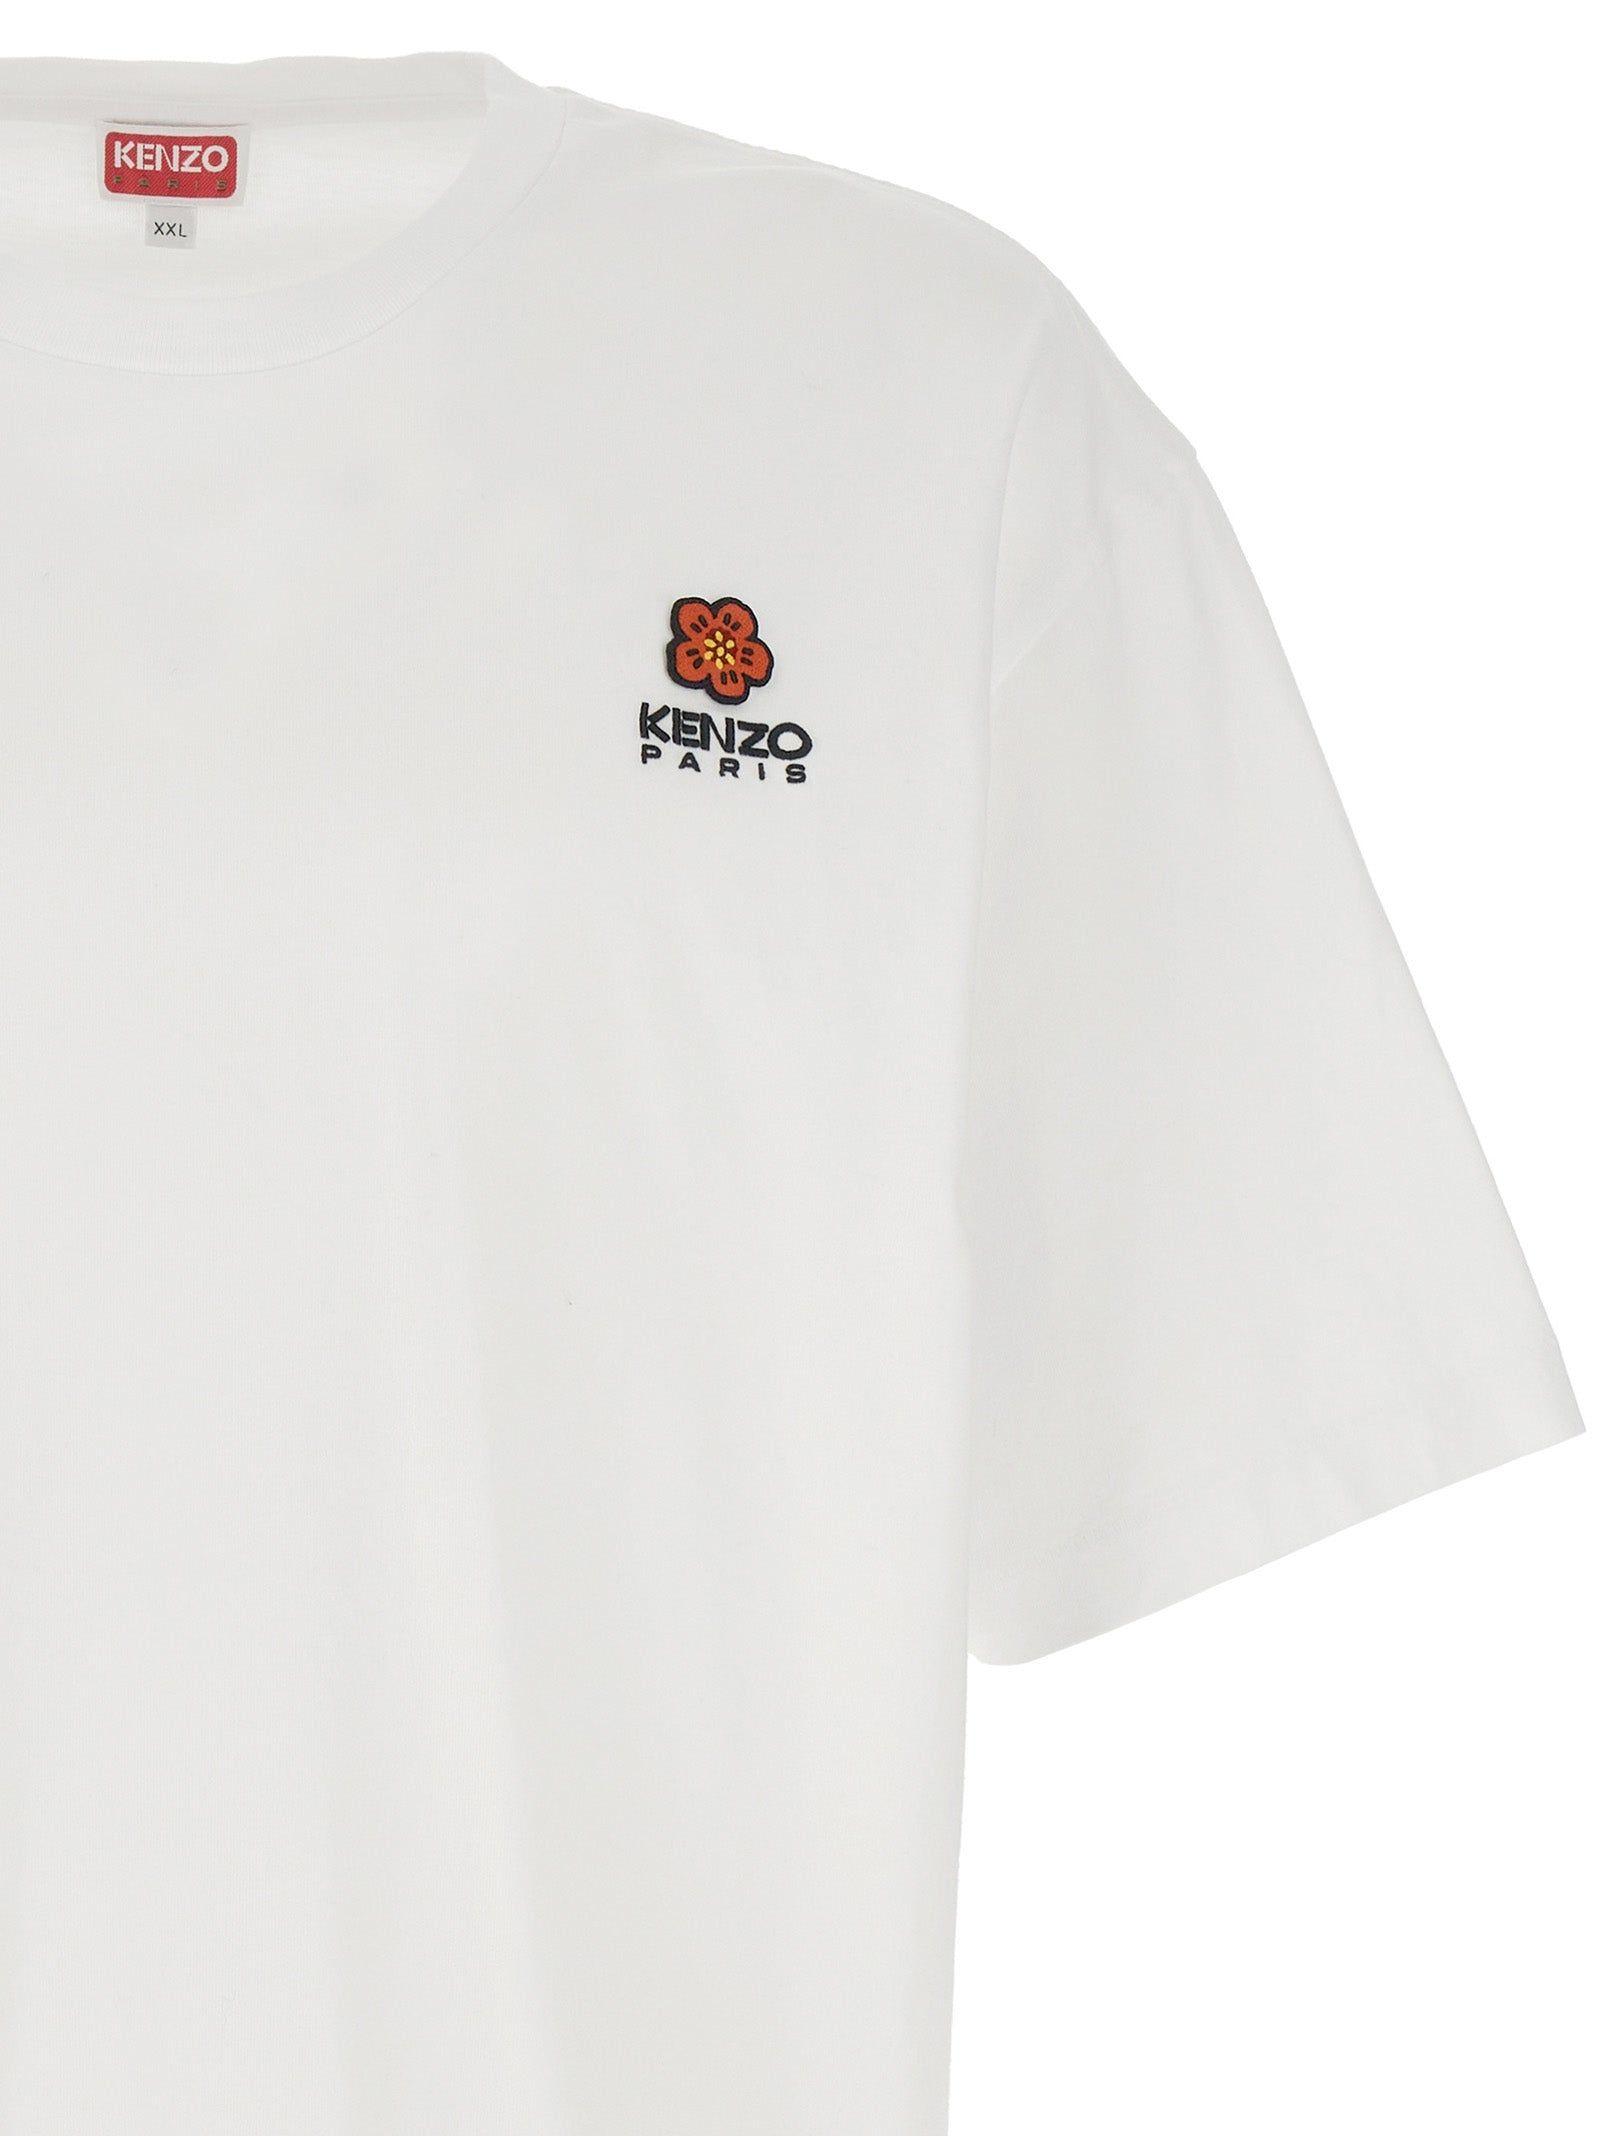 KENZO Boke Flower Crest T-shirt in White for Men | Lyst